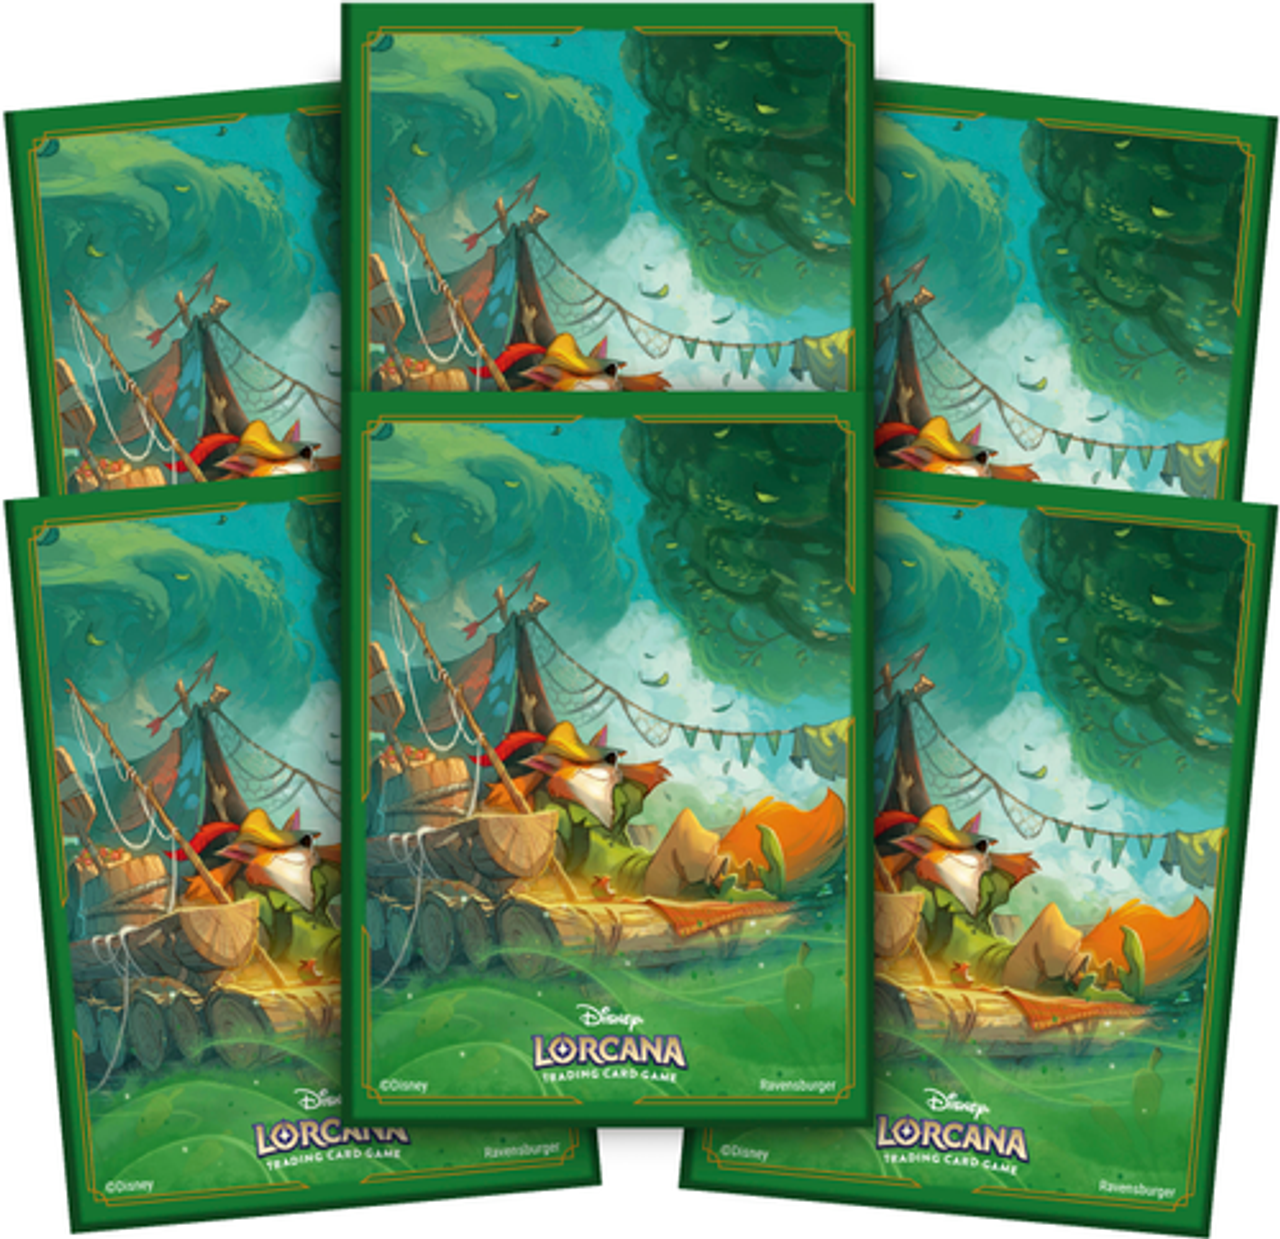 Lorcana - Disney Lorcana: Into the Inklands - Card Sleeve (Robin Hood)